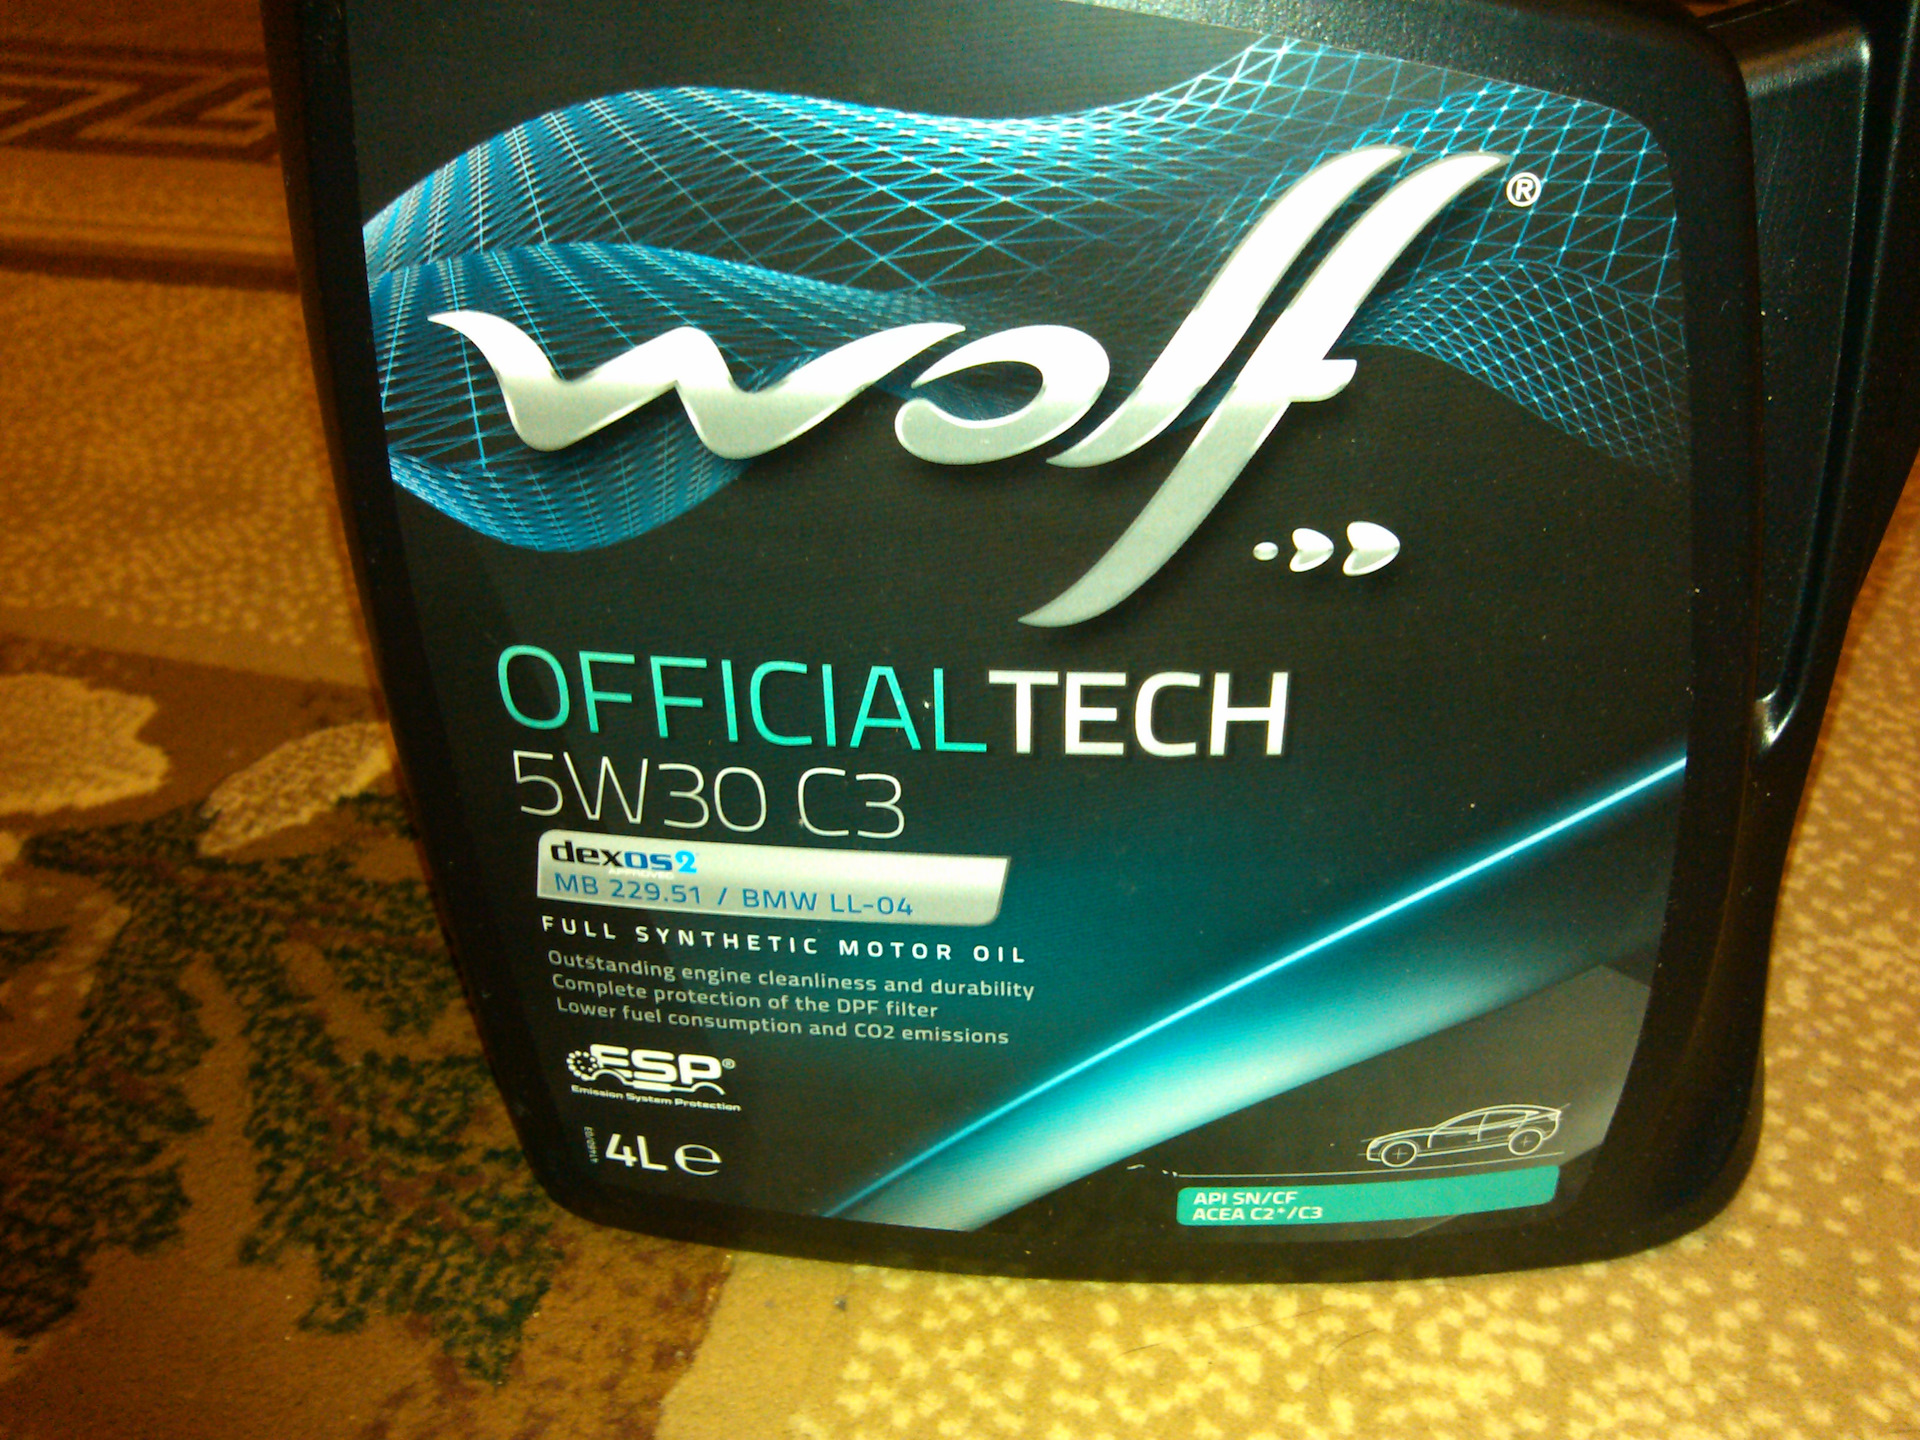 5w30 c3 масло куплю. Wolf OFFICIALTECH 5w30 артикул 8308116. Wolf officialtech5w30 c2/c3. Масло Wolf 5w30 c3. Масло Wolf 5w30 OFFICIALTECH c3.